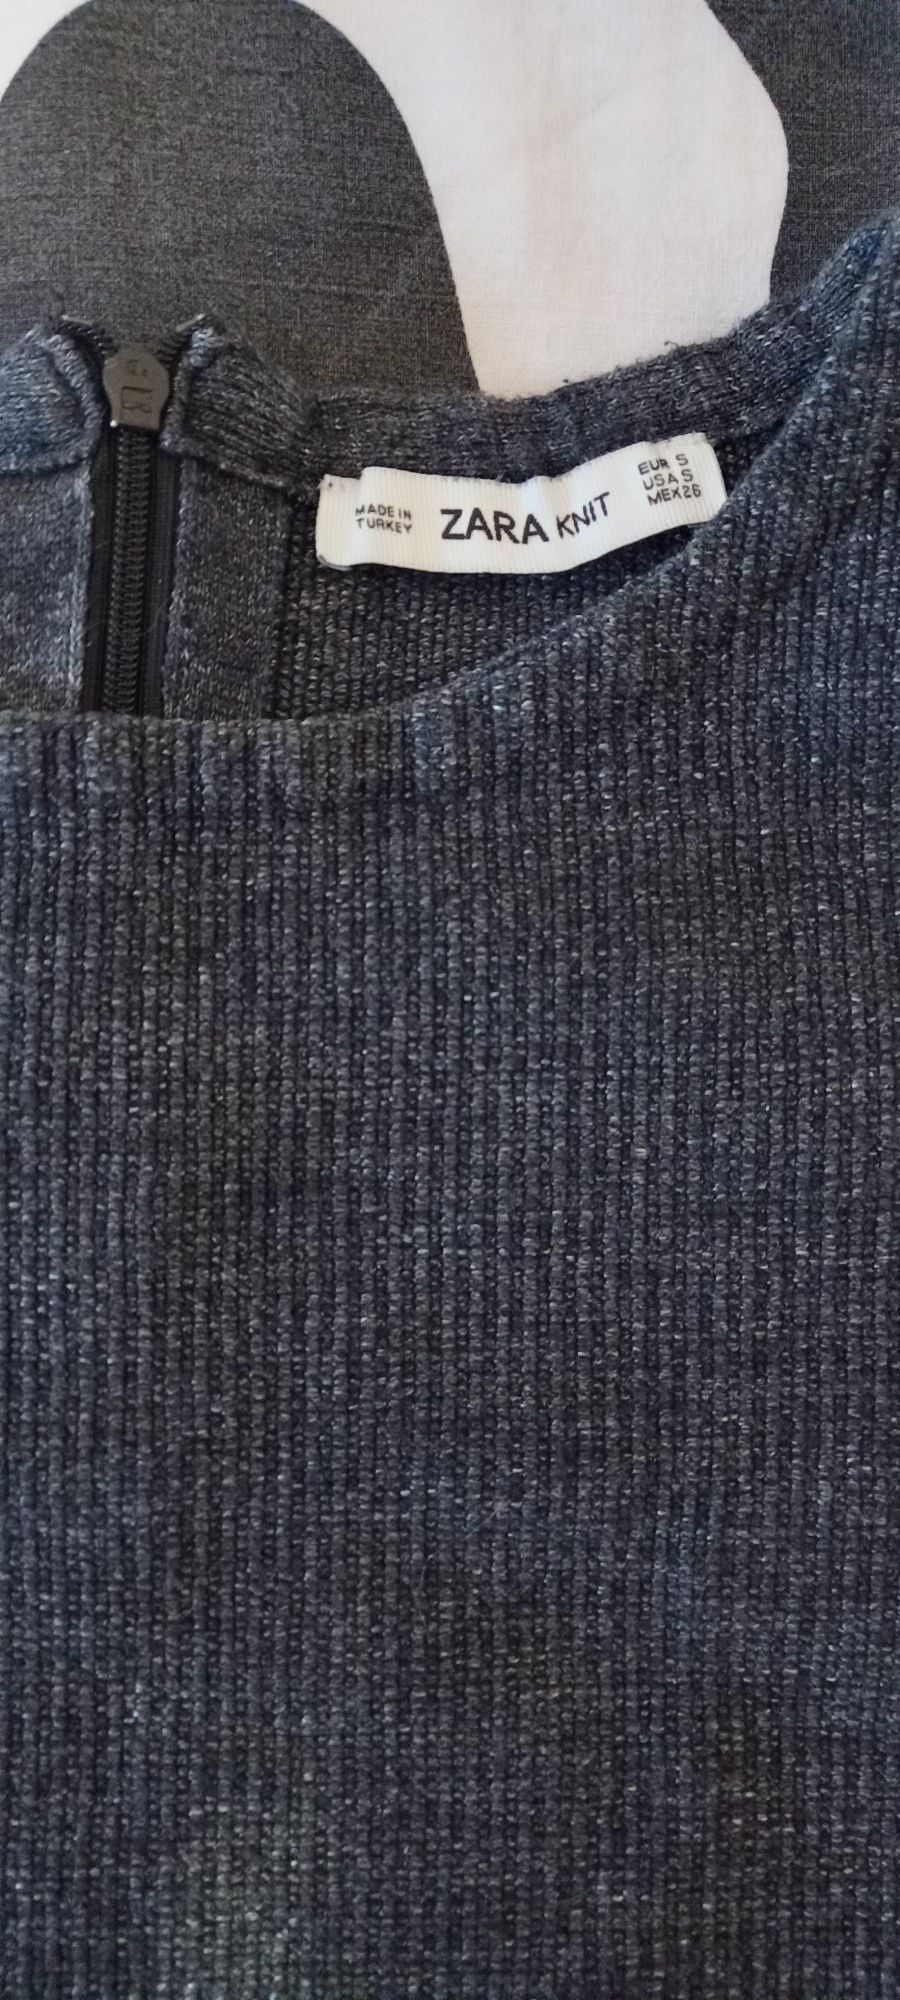 Тёплый топ/укороченая футболка ZARA KNIT / свитер